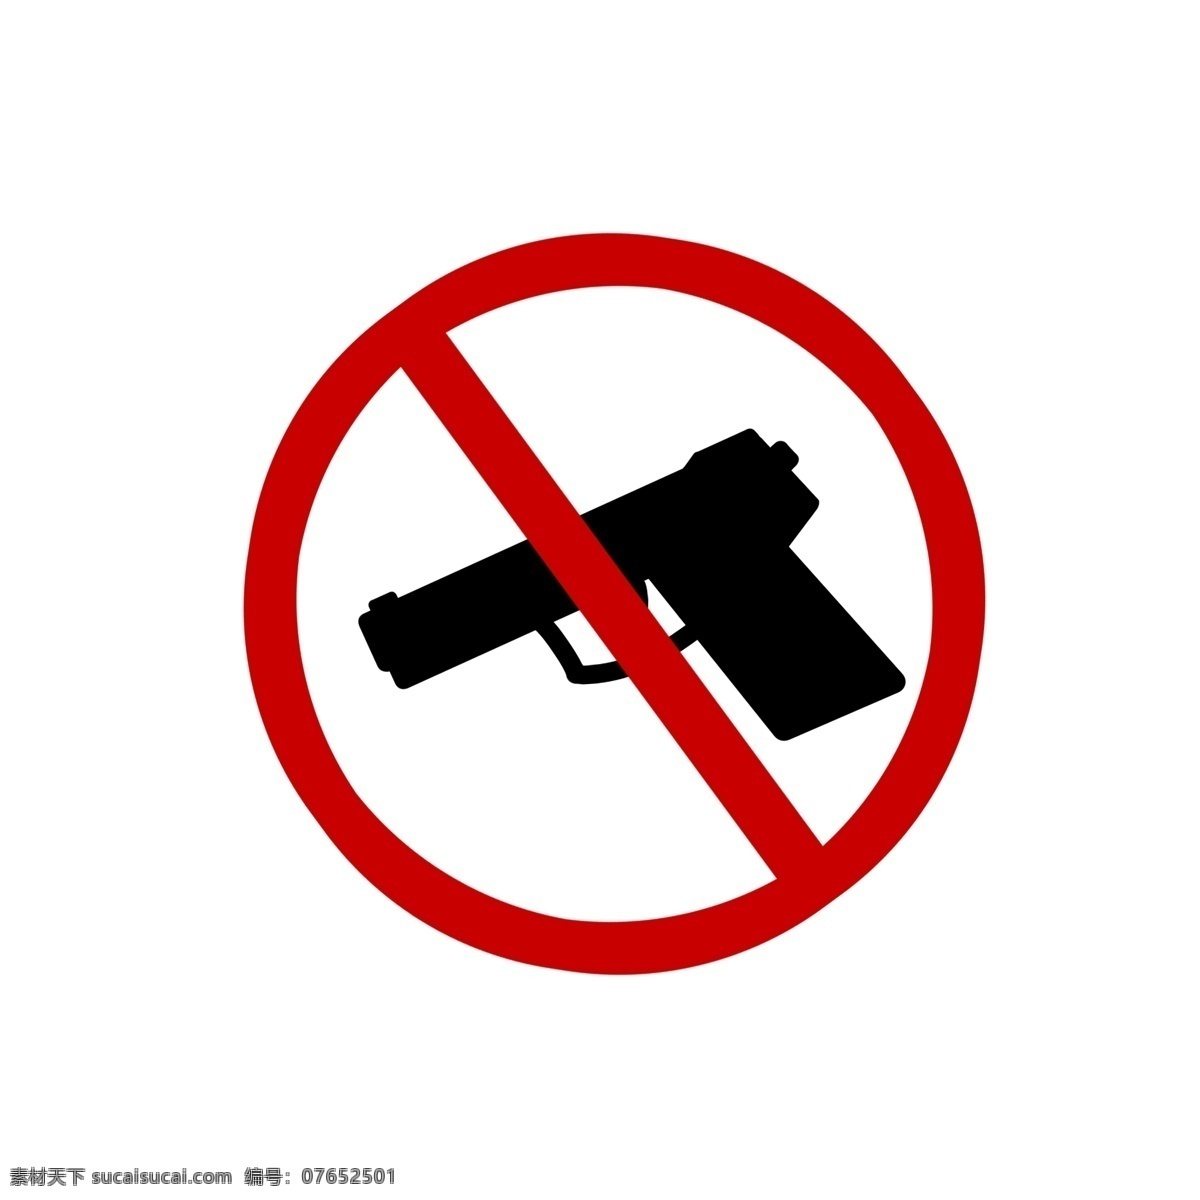 禁止 携带 枪械 图标 免 抠 图 禁止标识 警告牌 服务 标志 标语 注意 警告 禁止携带枪械 禁止带枪 国家指令 圆形禁令 红色 现代